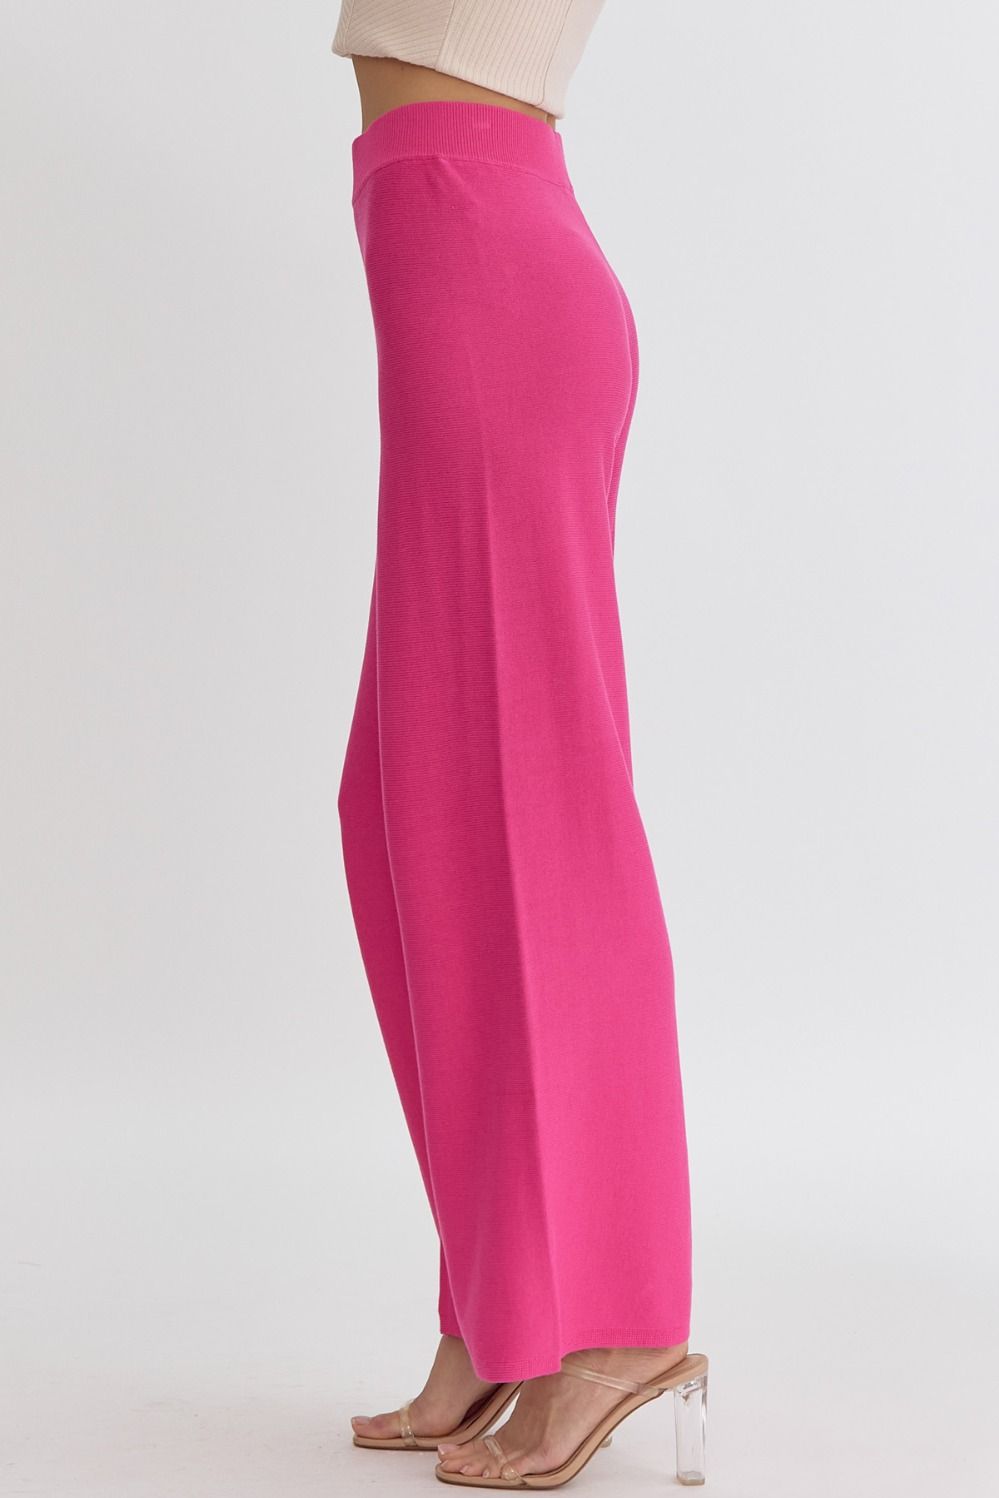 High Waist Wide Leg Knit Pants Hot Pink